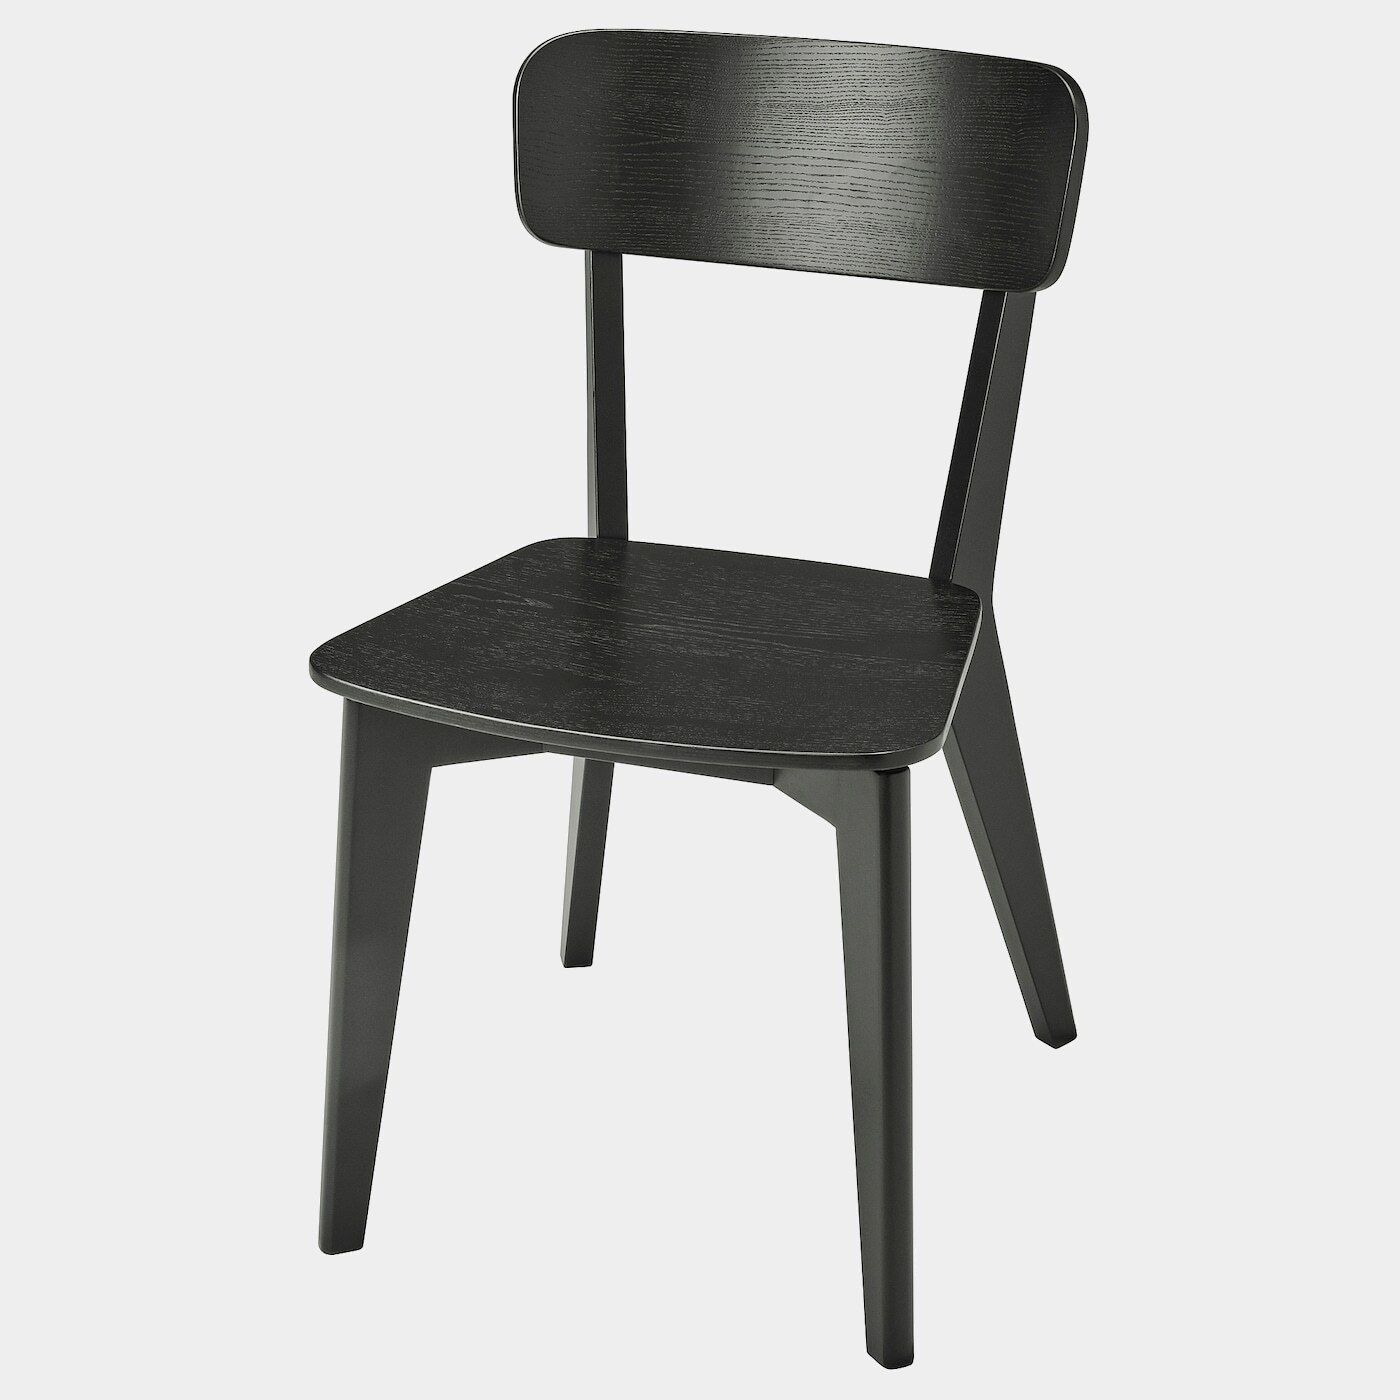 LISABO Stuhl  -  - Möbel Ideen für dein Zuhause von Home Trends. Möbel Trends von Social Media Influencer für dein Skandi Zuhause.